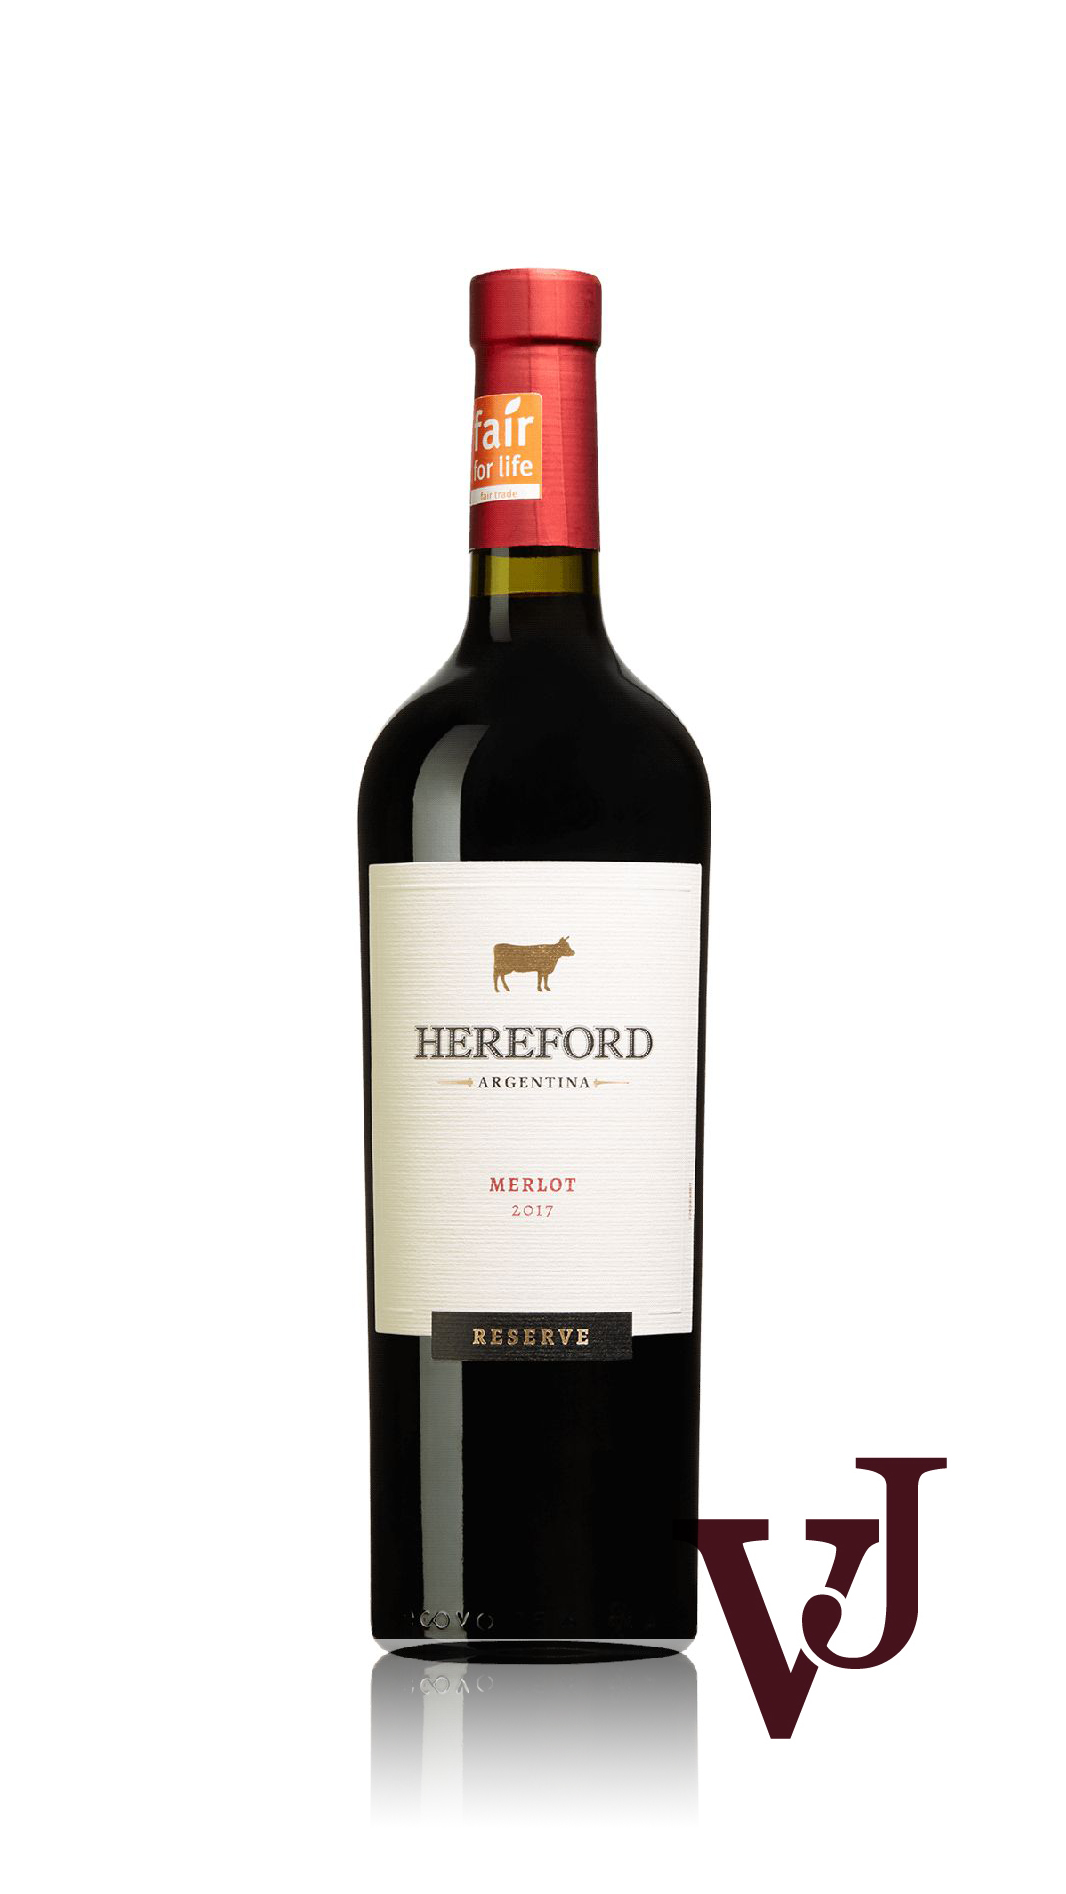 Rött Vin - Hereford Reserva Merlot artikel nummer 295101 från producenten Bodegas La Rosa från området Argentina